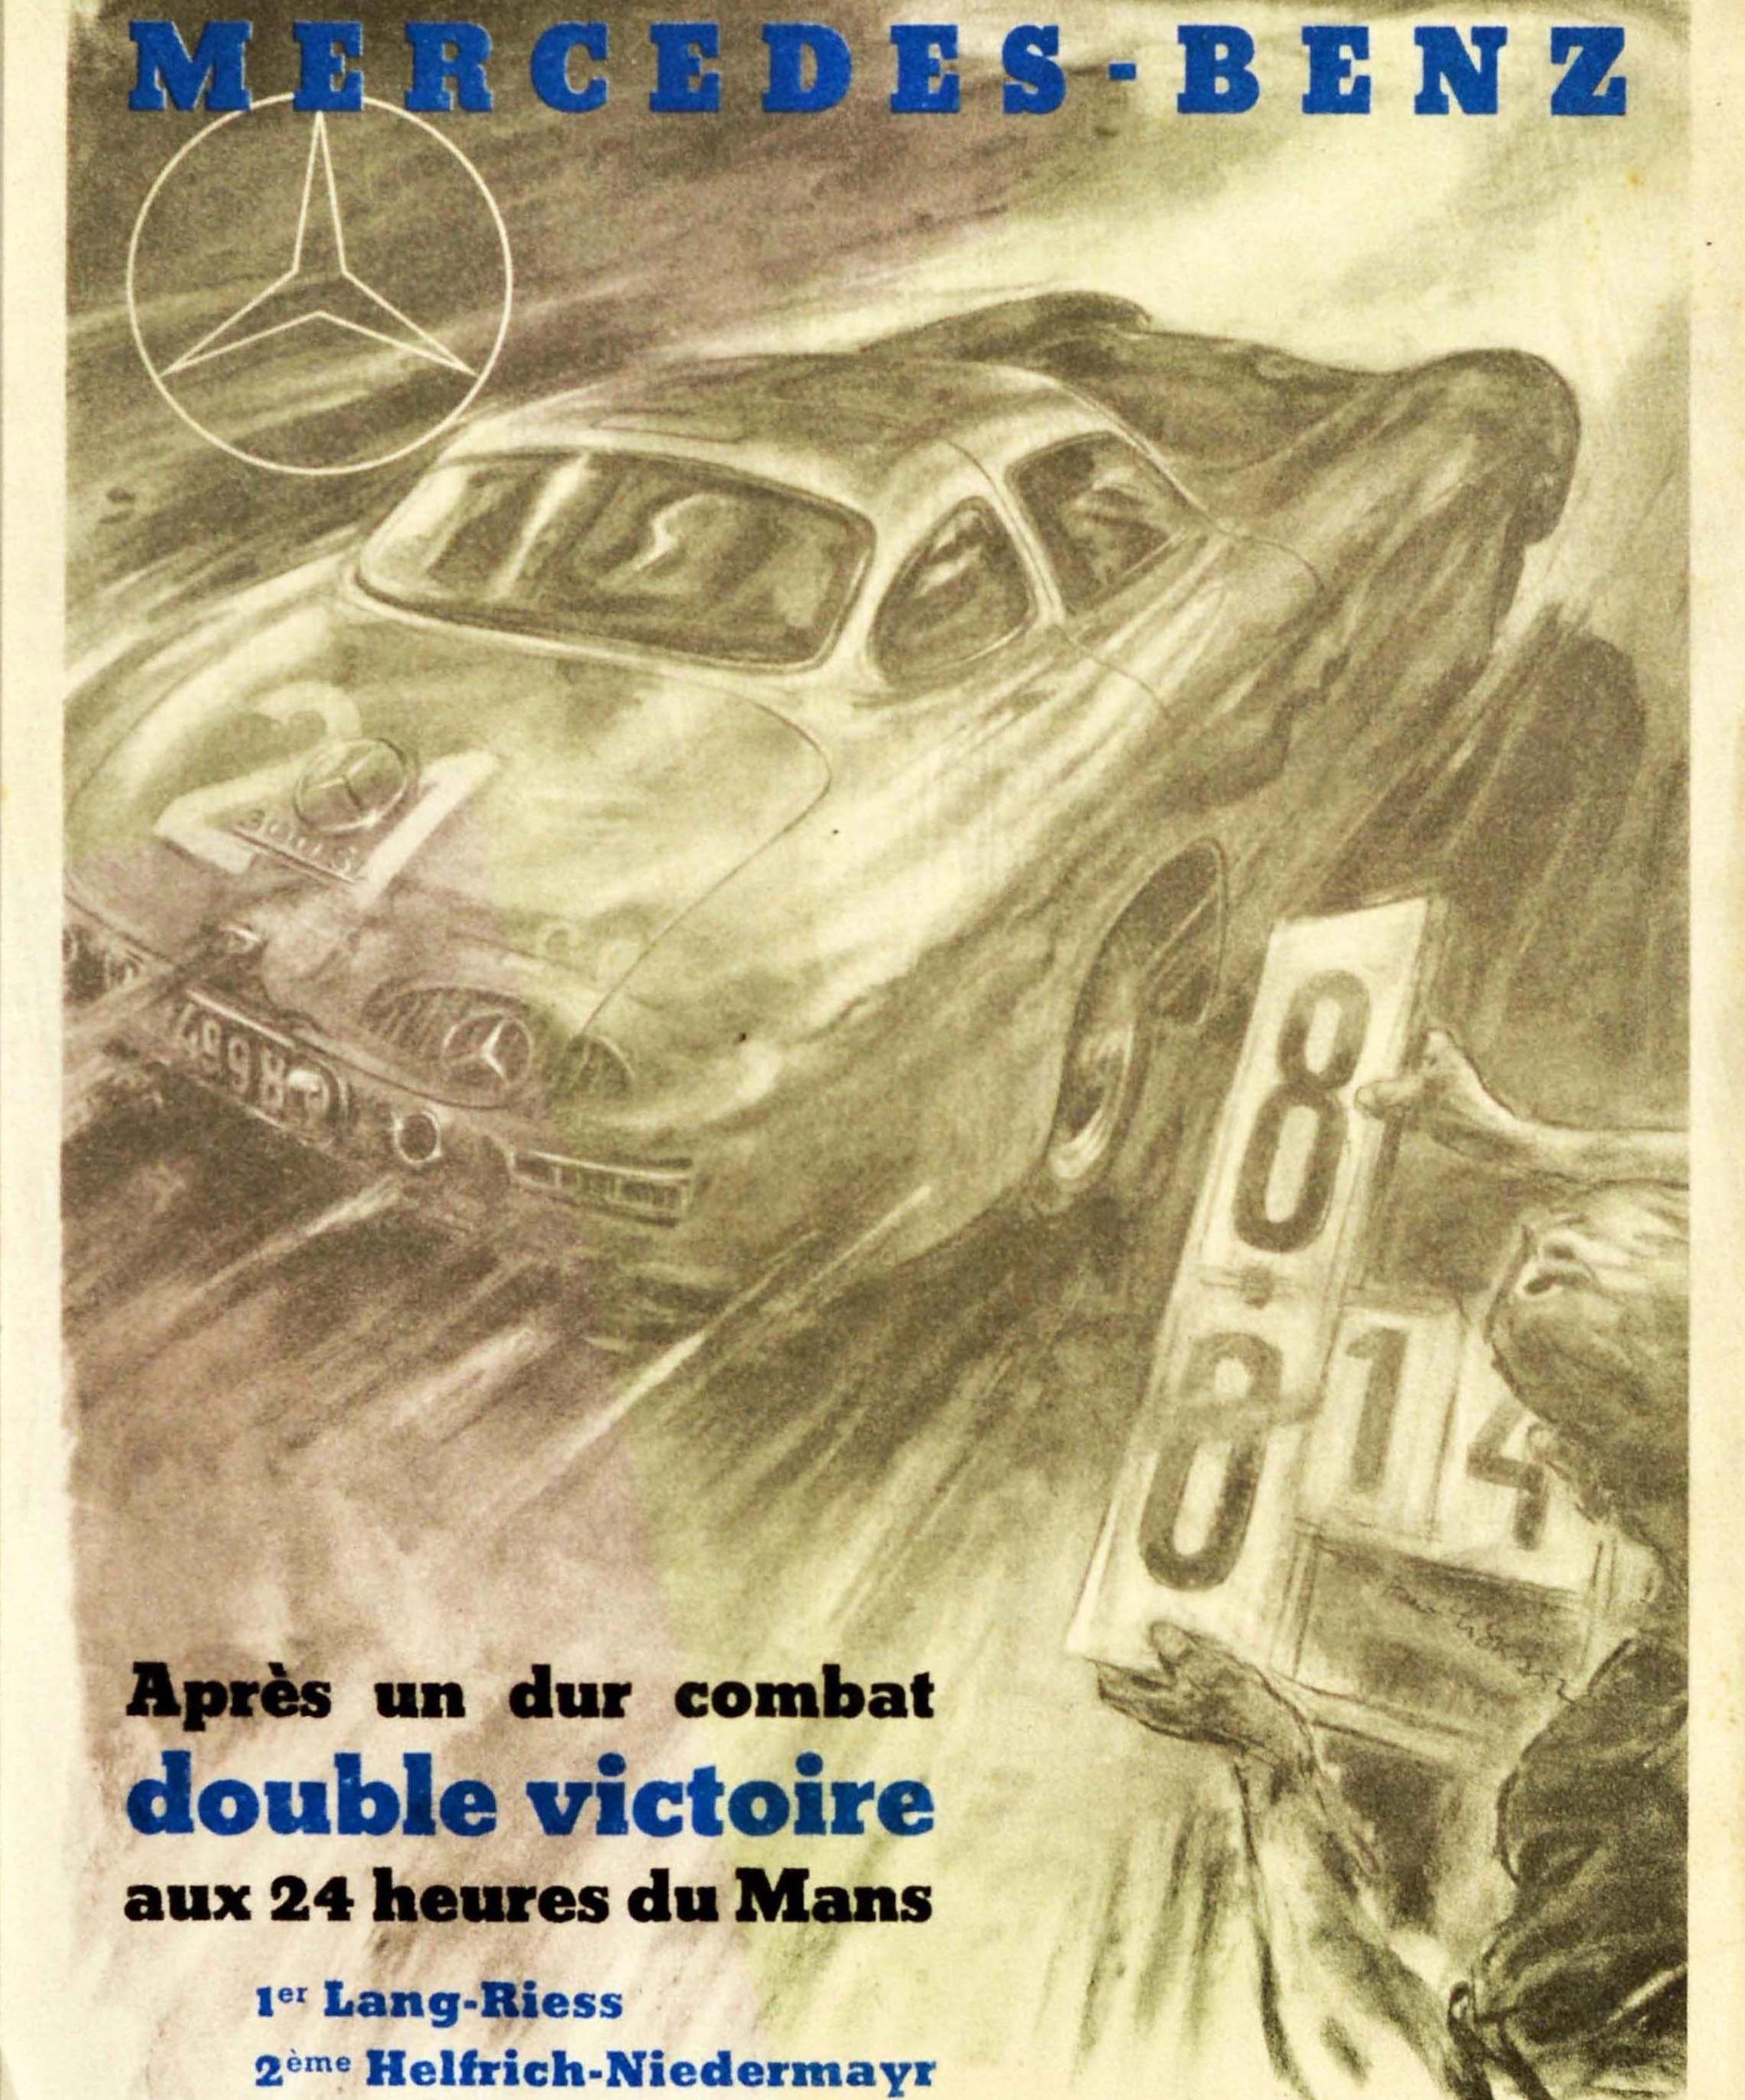 Affiche originale de sport automobile d'époque célébrant la double victoire de la Mercedes-Benz 300SL dans la course automobile des 24 heures du Mans. Elle comporte une illustration dynamique du graphiste, peintre et artiste autrichien Hans Liska